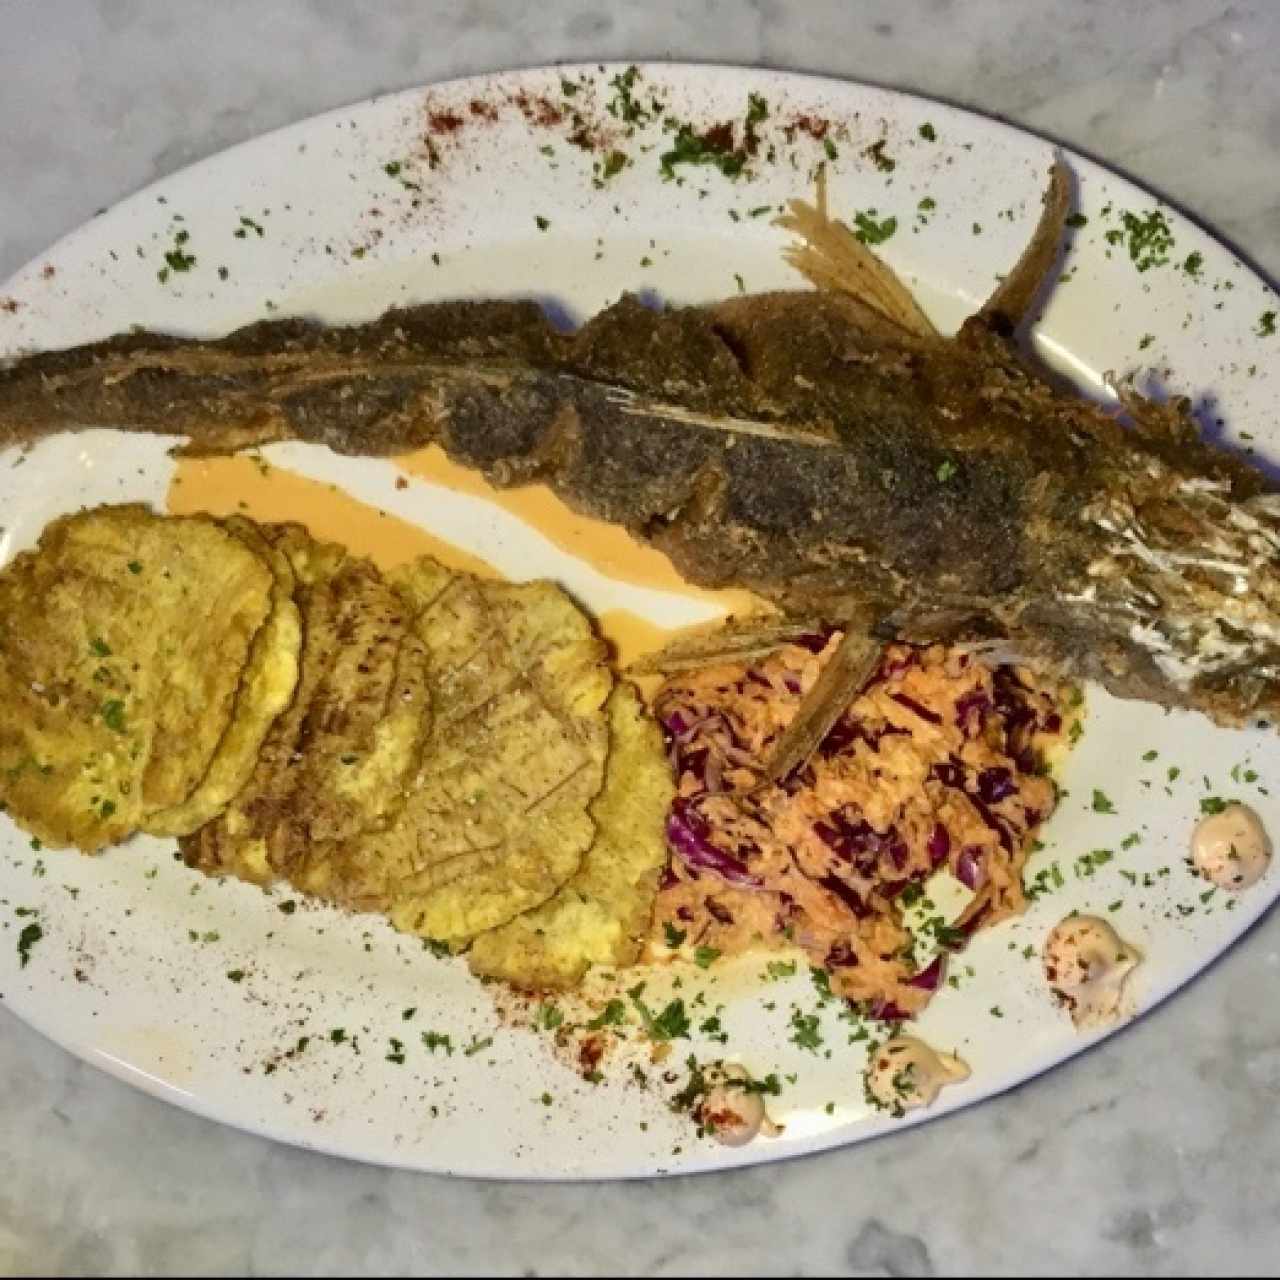 Principales - Pesca'o frito Veracruz